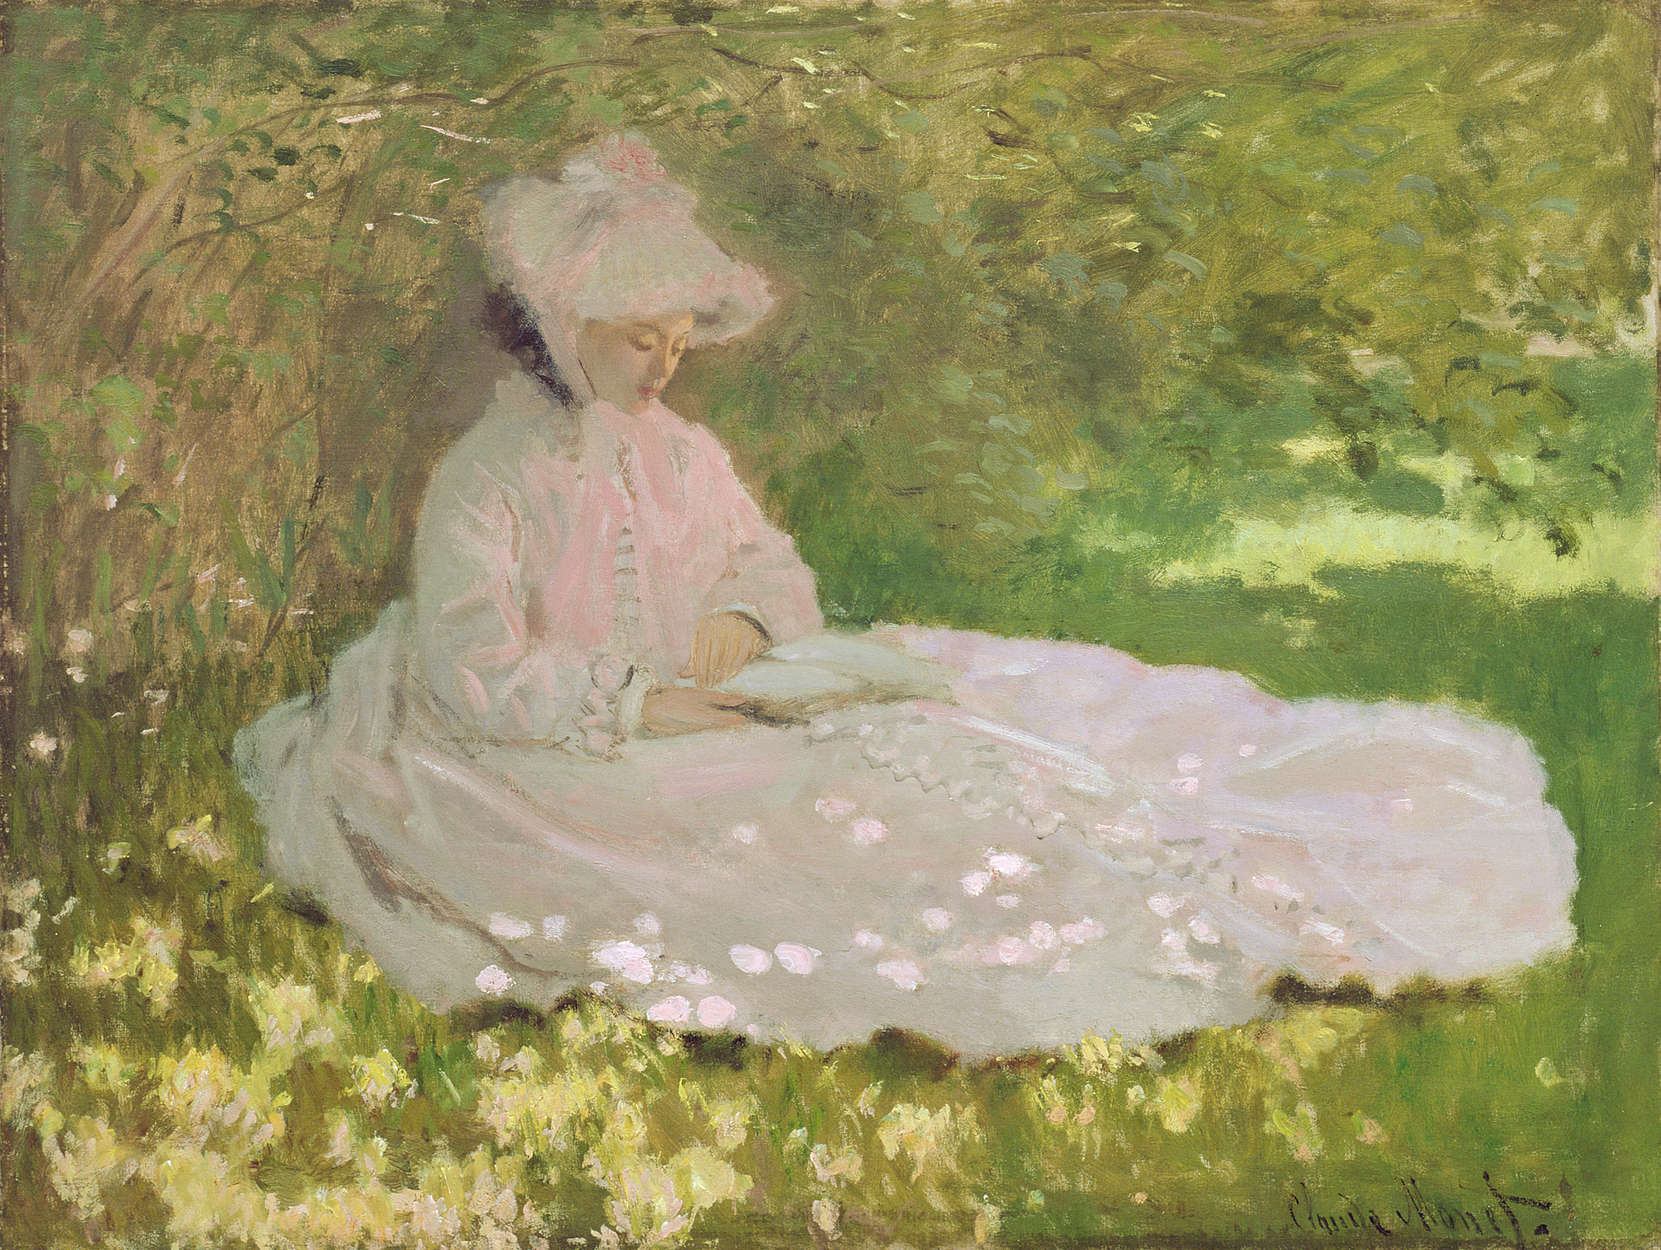             Lente" muurschildering van Claude Monet
        